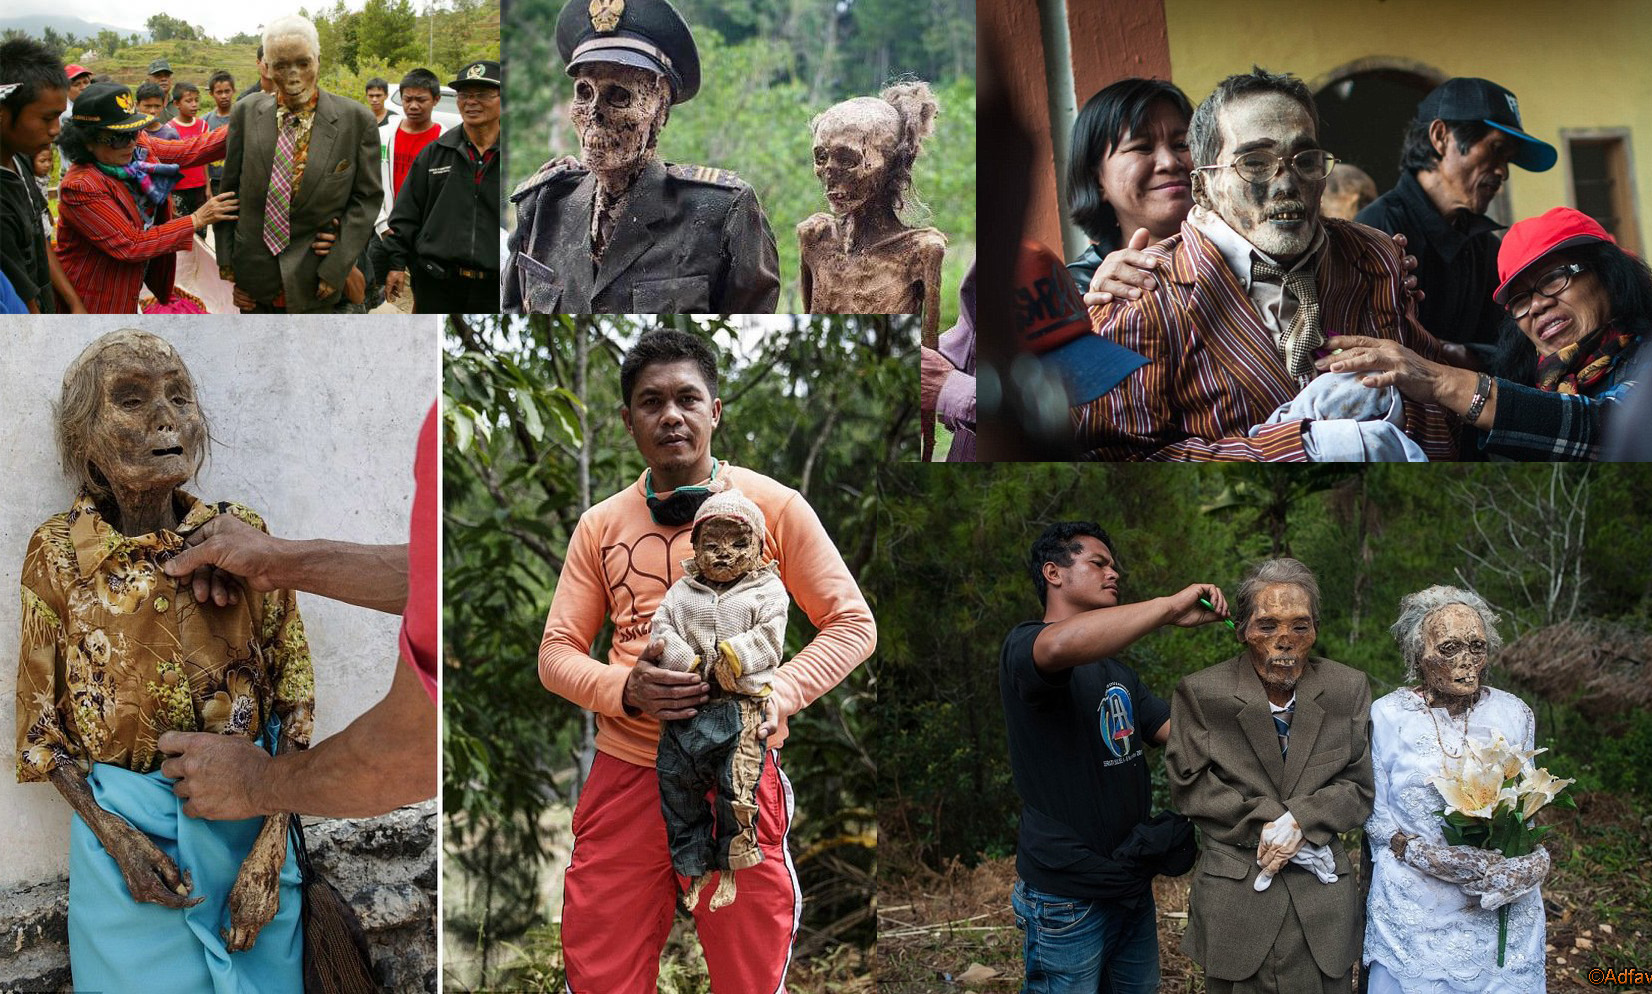 "Они выкапывают мертвых и одевают их в новую одежду": пользователи соцсетей шокированы жутким ритуалом в Индонезии